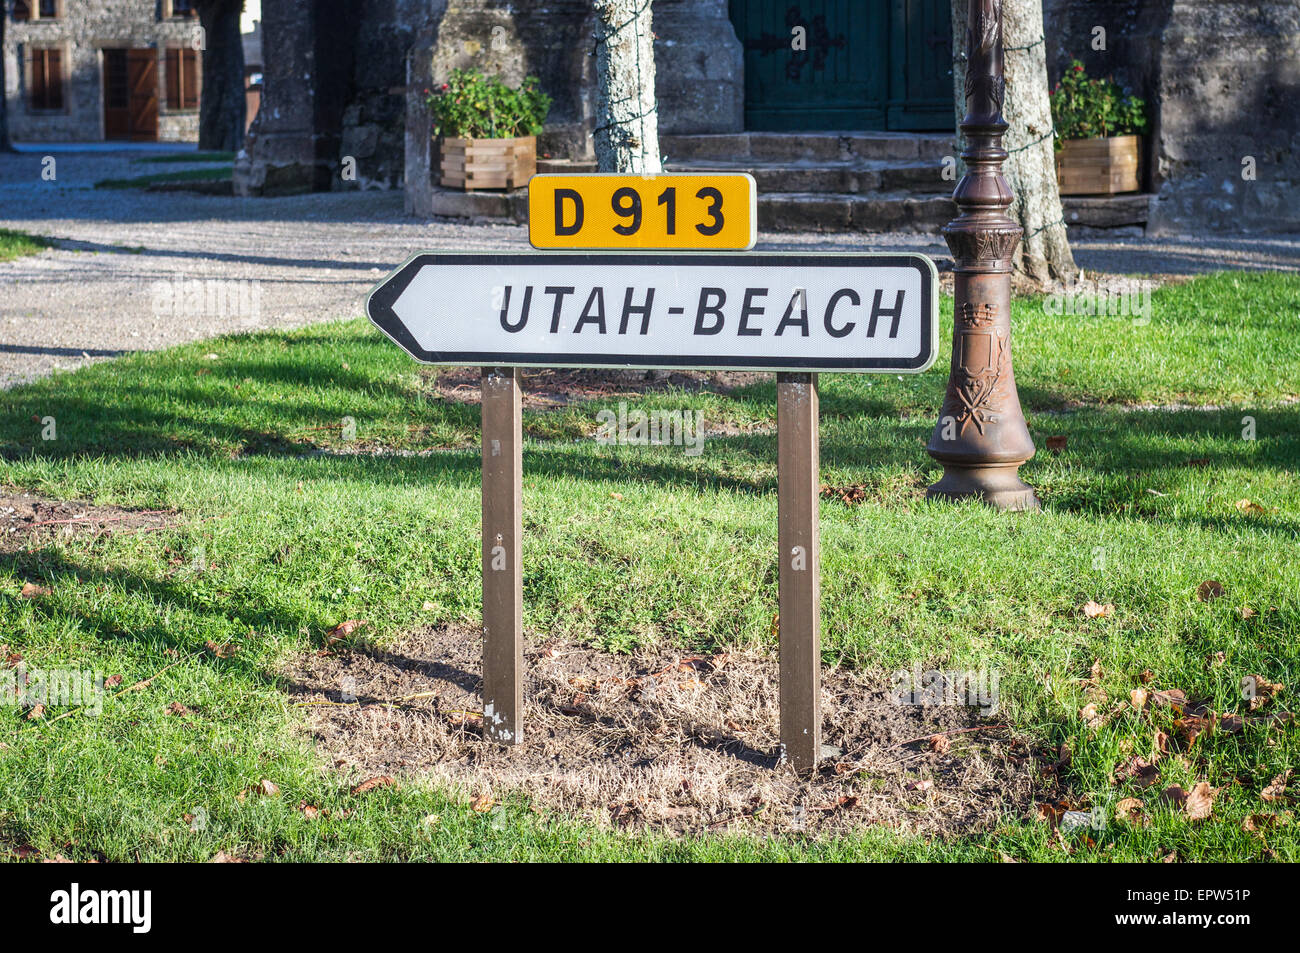 Melden Sie sich für die D-913 Straße in einem französischen Dorf in der Normandie, die die Richtung der Utah Beach, dem zweiten Weltkrieg Landung Strand. Stockfoto